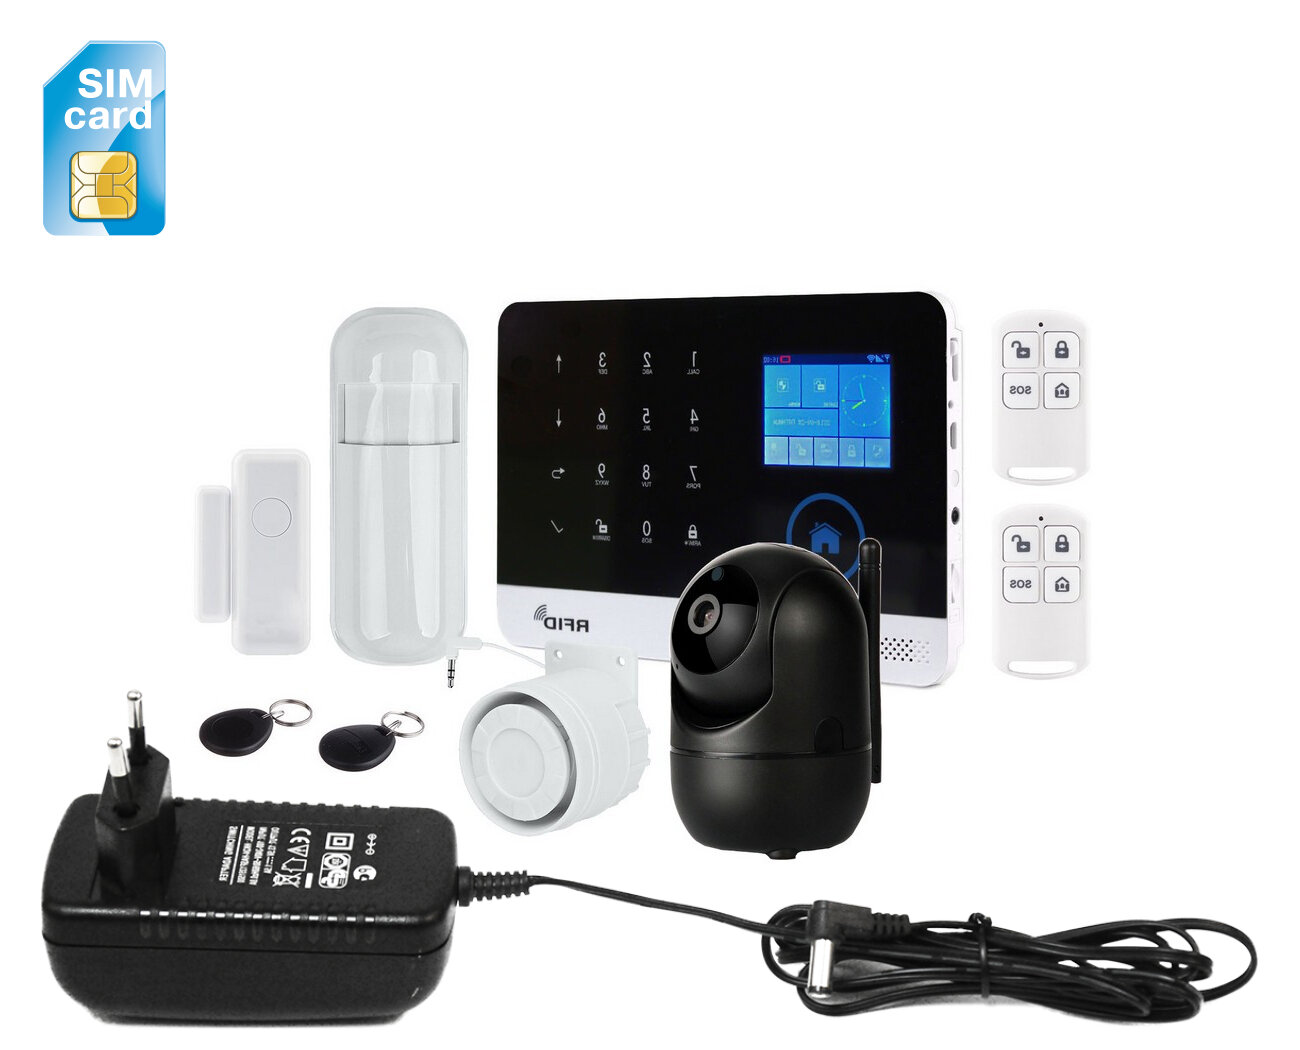 GSM Wi-Fi сигнализация для дачи с видеокамерой - HDком 288Bl(ASW5) и Страж Око+ (U59828OK) для загородного дома, гаража, квартиры